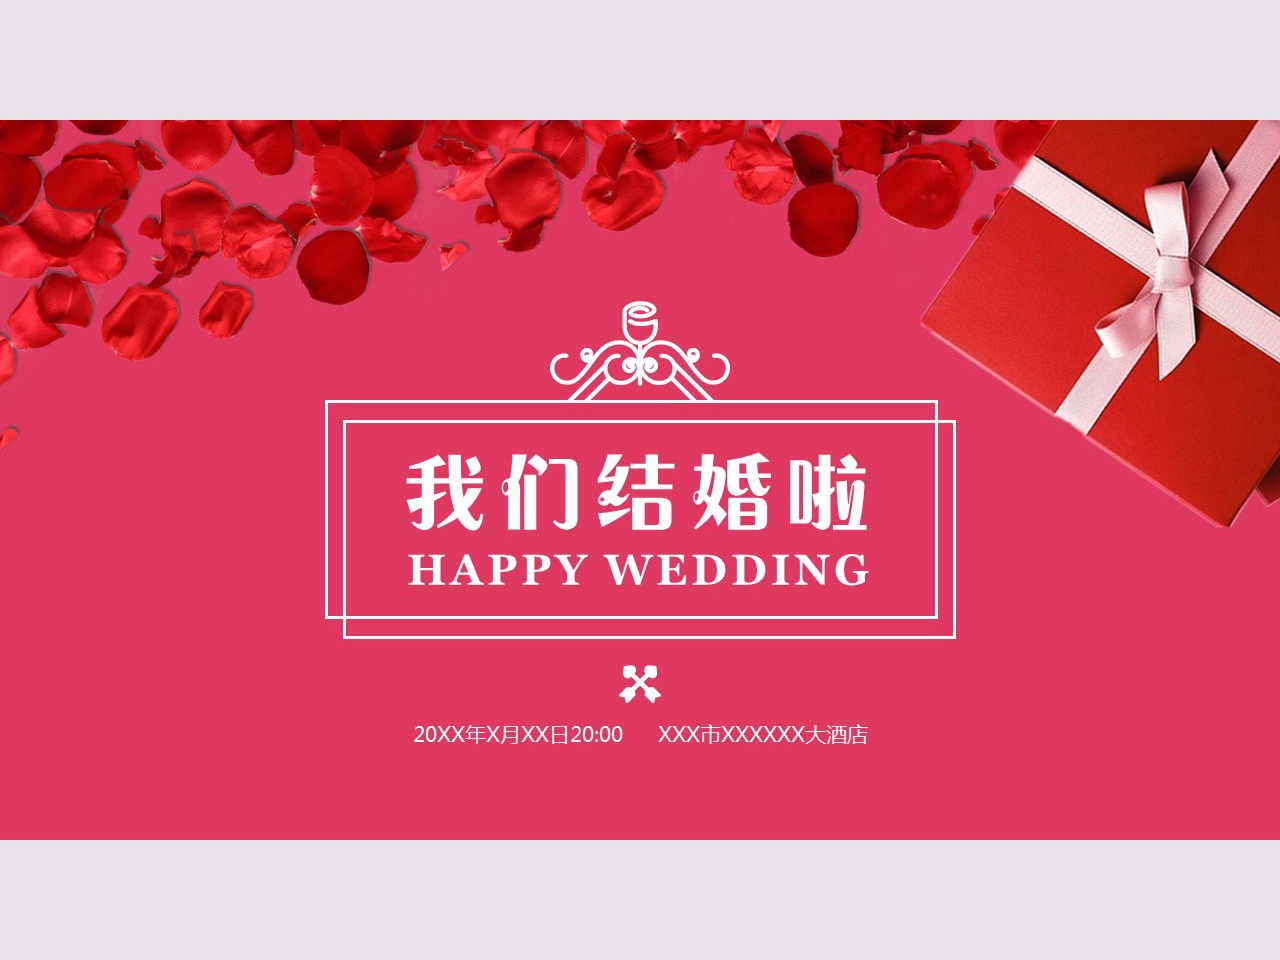 十周年结婚纪念日蛋糕图片带祝福语【婚礼纪】